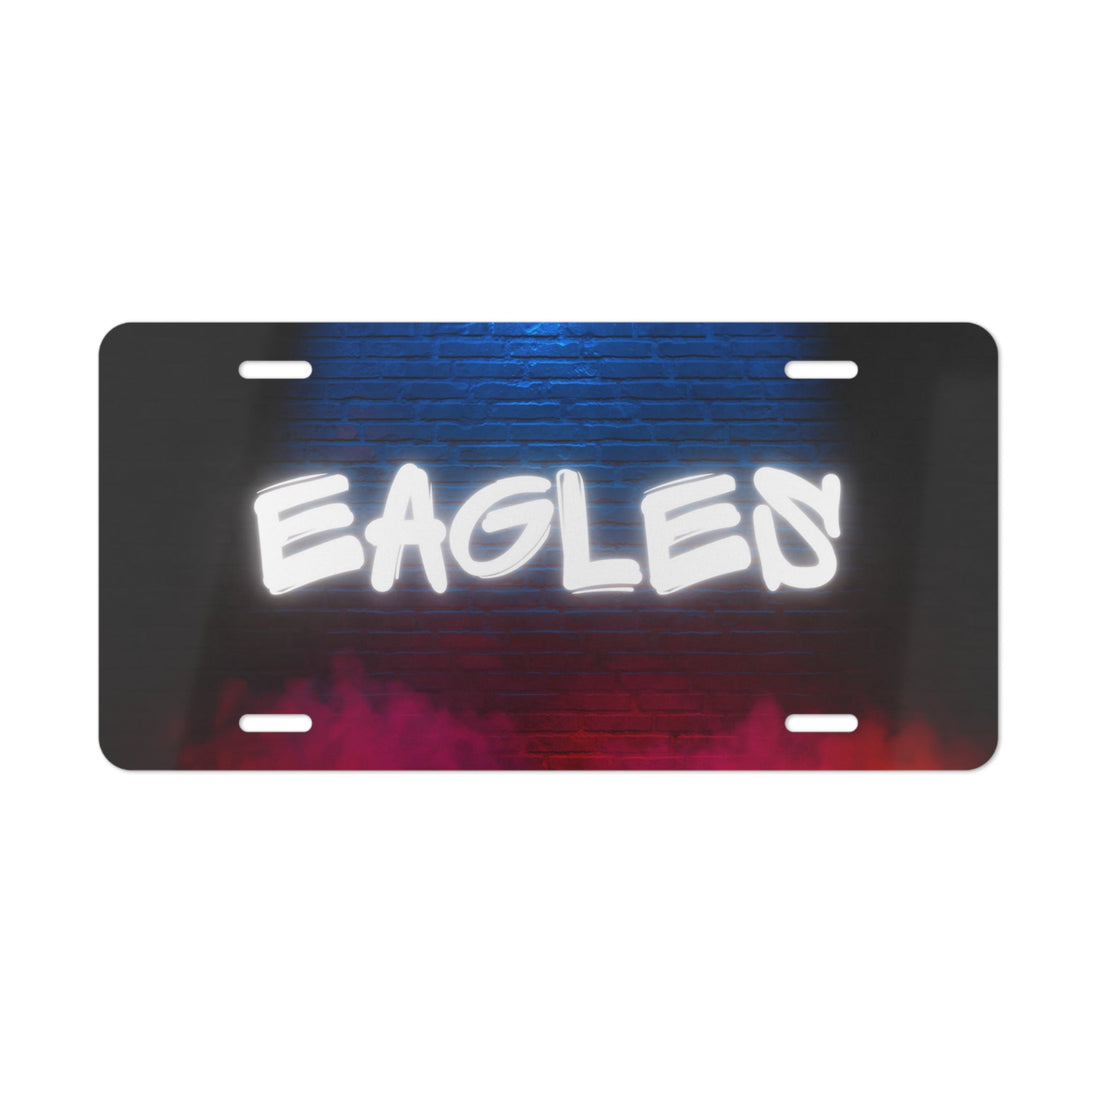 Eagle Graffiti License Plate - Accessories - Positively Sassy - Eagle Graffiti License Plate